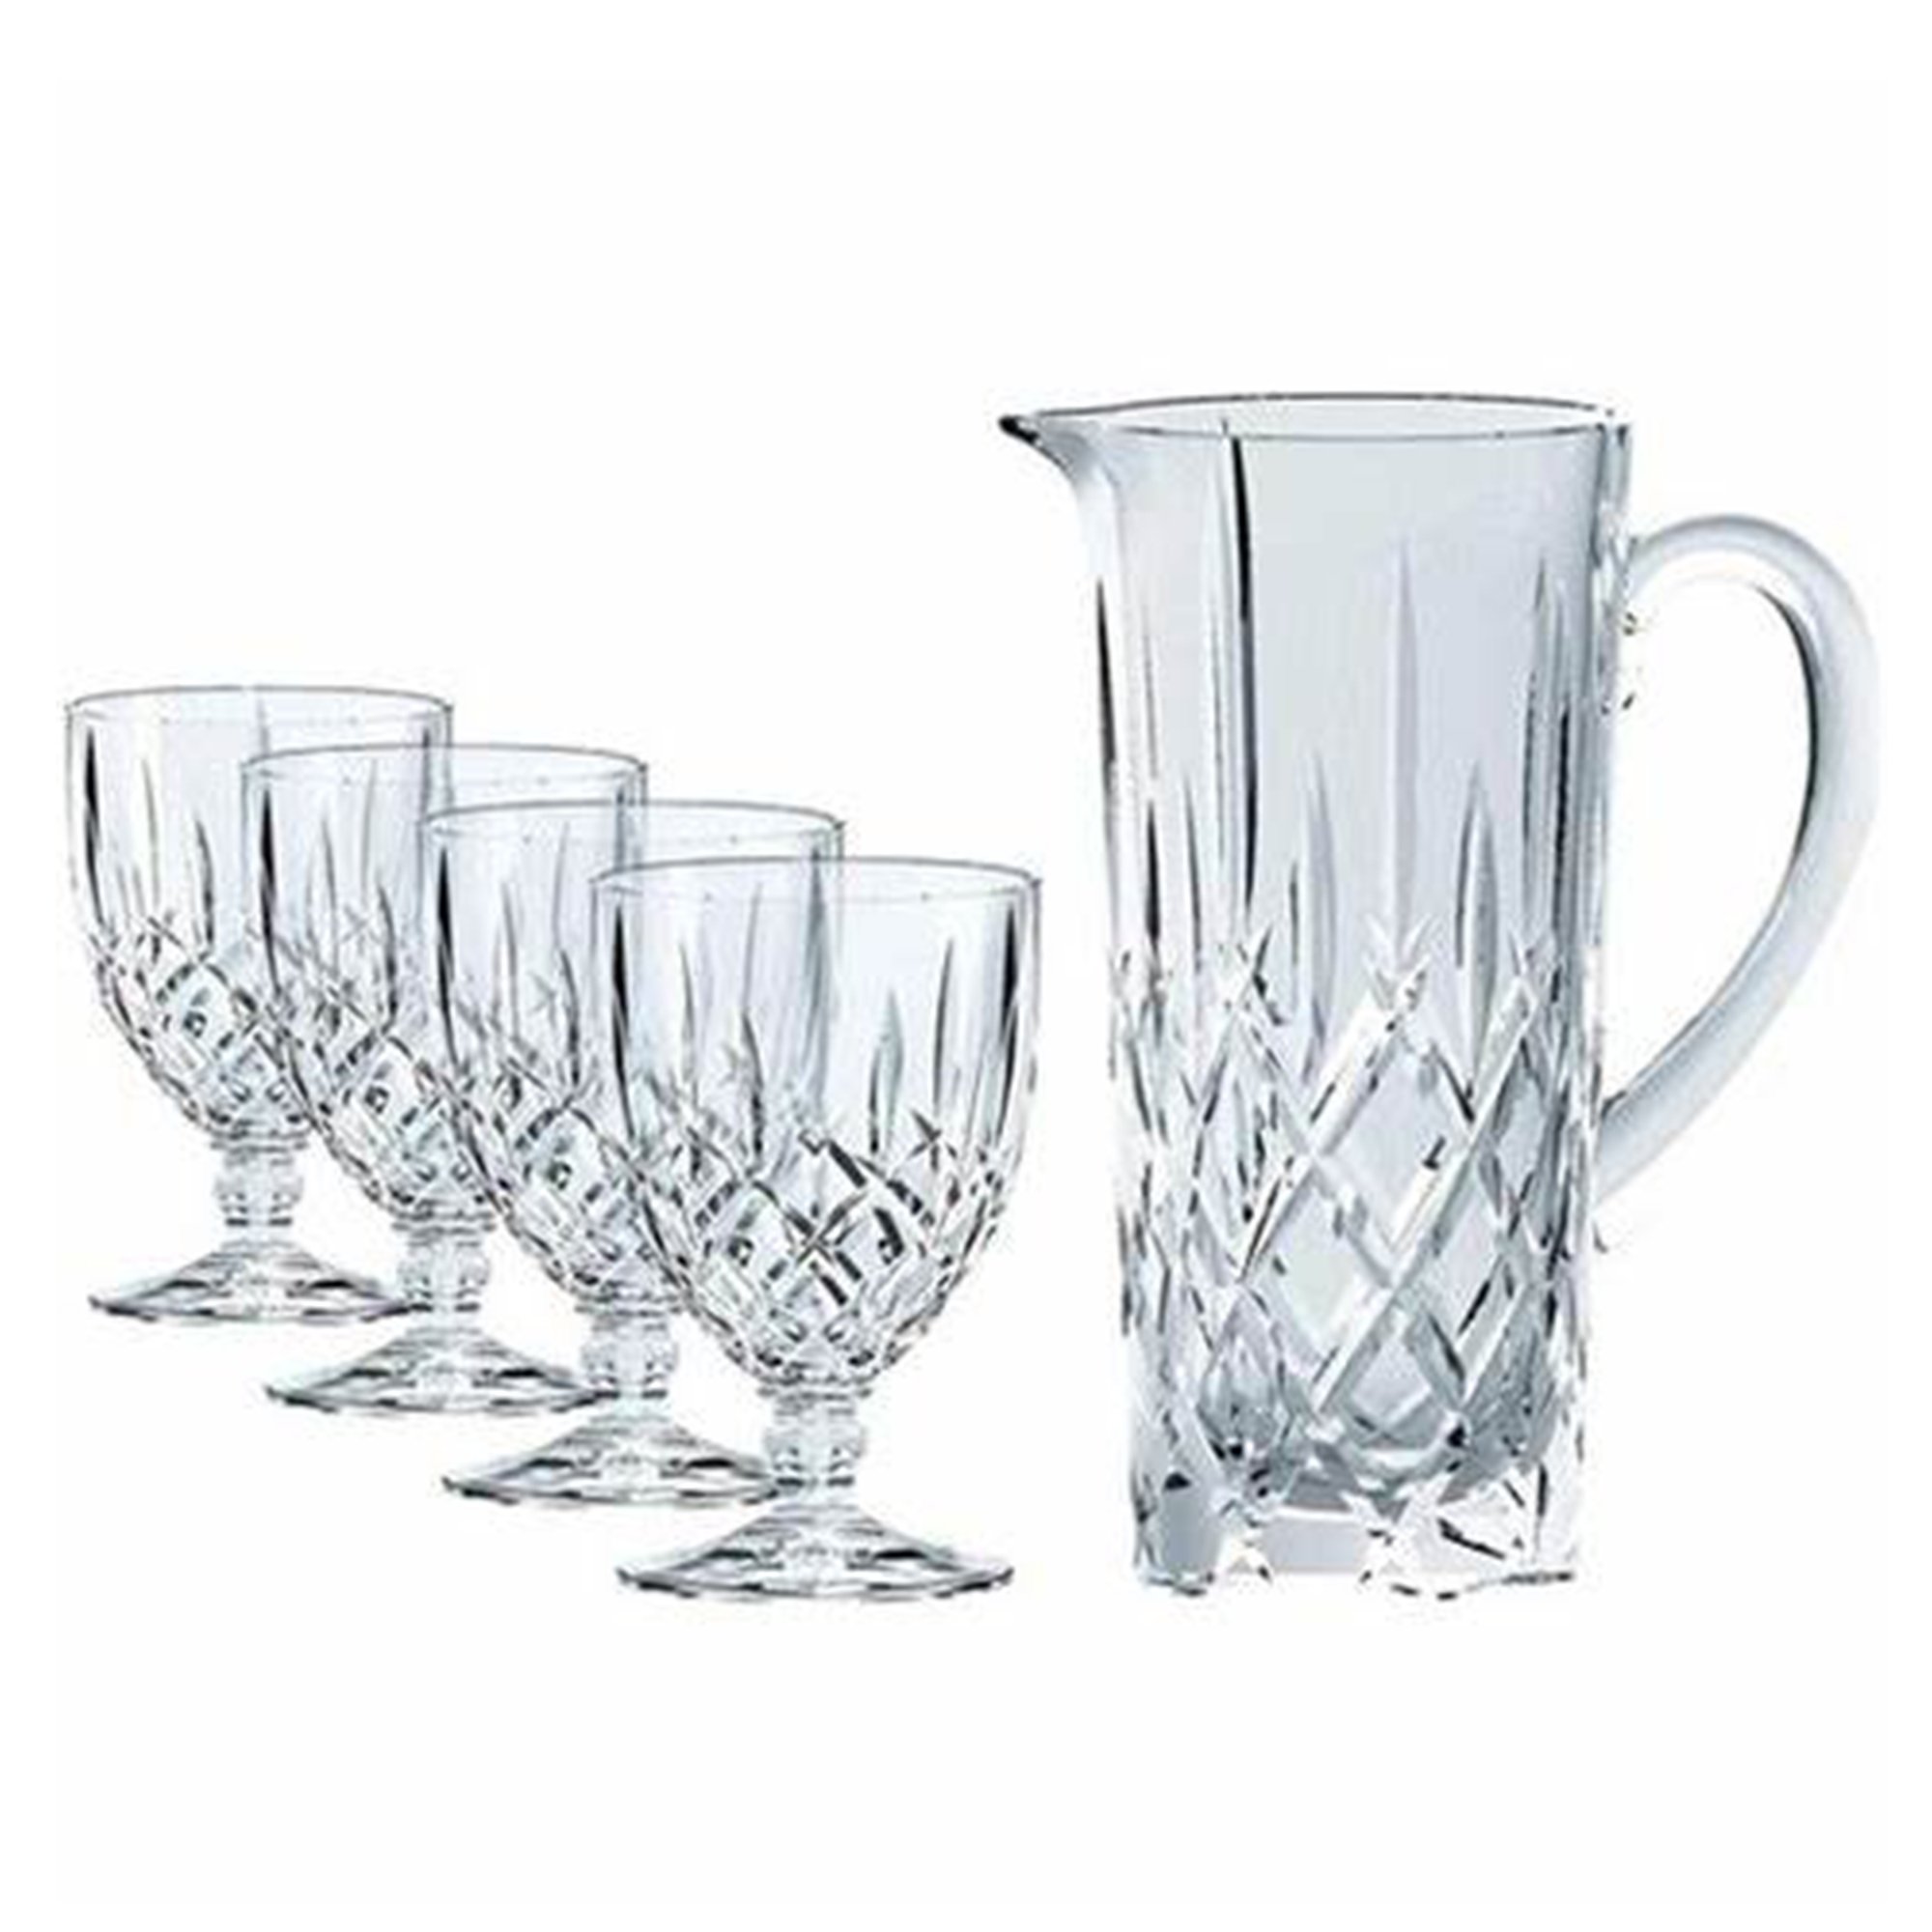 Nachtmann Noblesse glas med pitcher, set om 5 delar